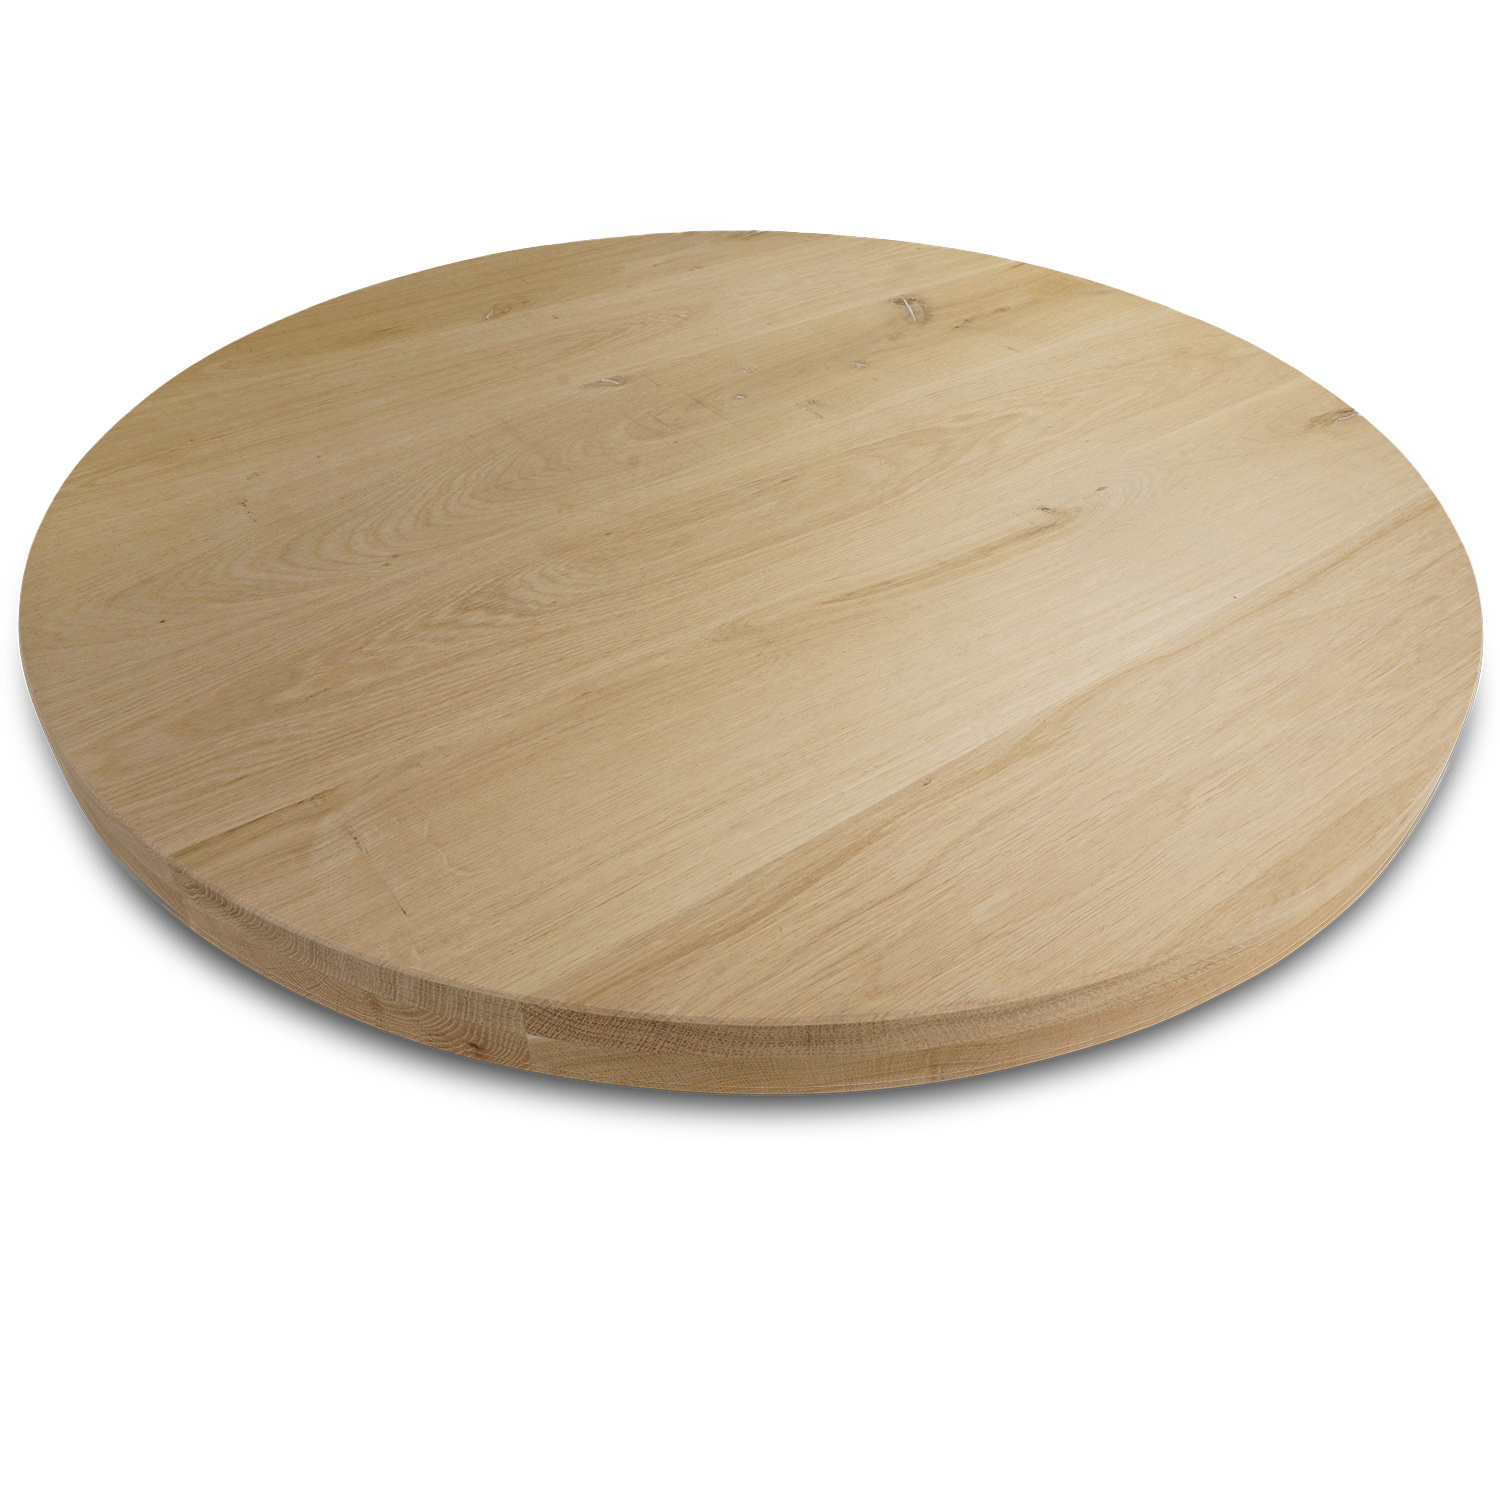  Tischplatte Eiche rund nach Maß - 5 cm dick (2-lagig) - Eichenholz rustikal - Durchmesser: 30 - 180 cm - Eiche Tischplatte rund massiv - verleimt & künstlich getrocknet (HF 8-12%)